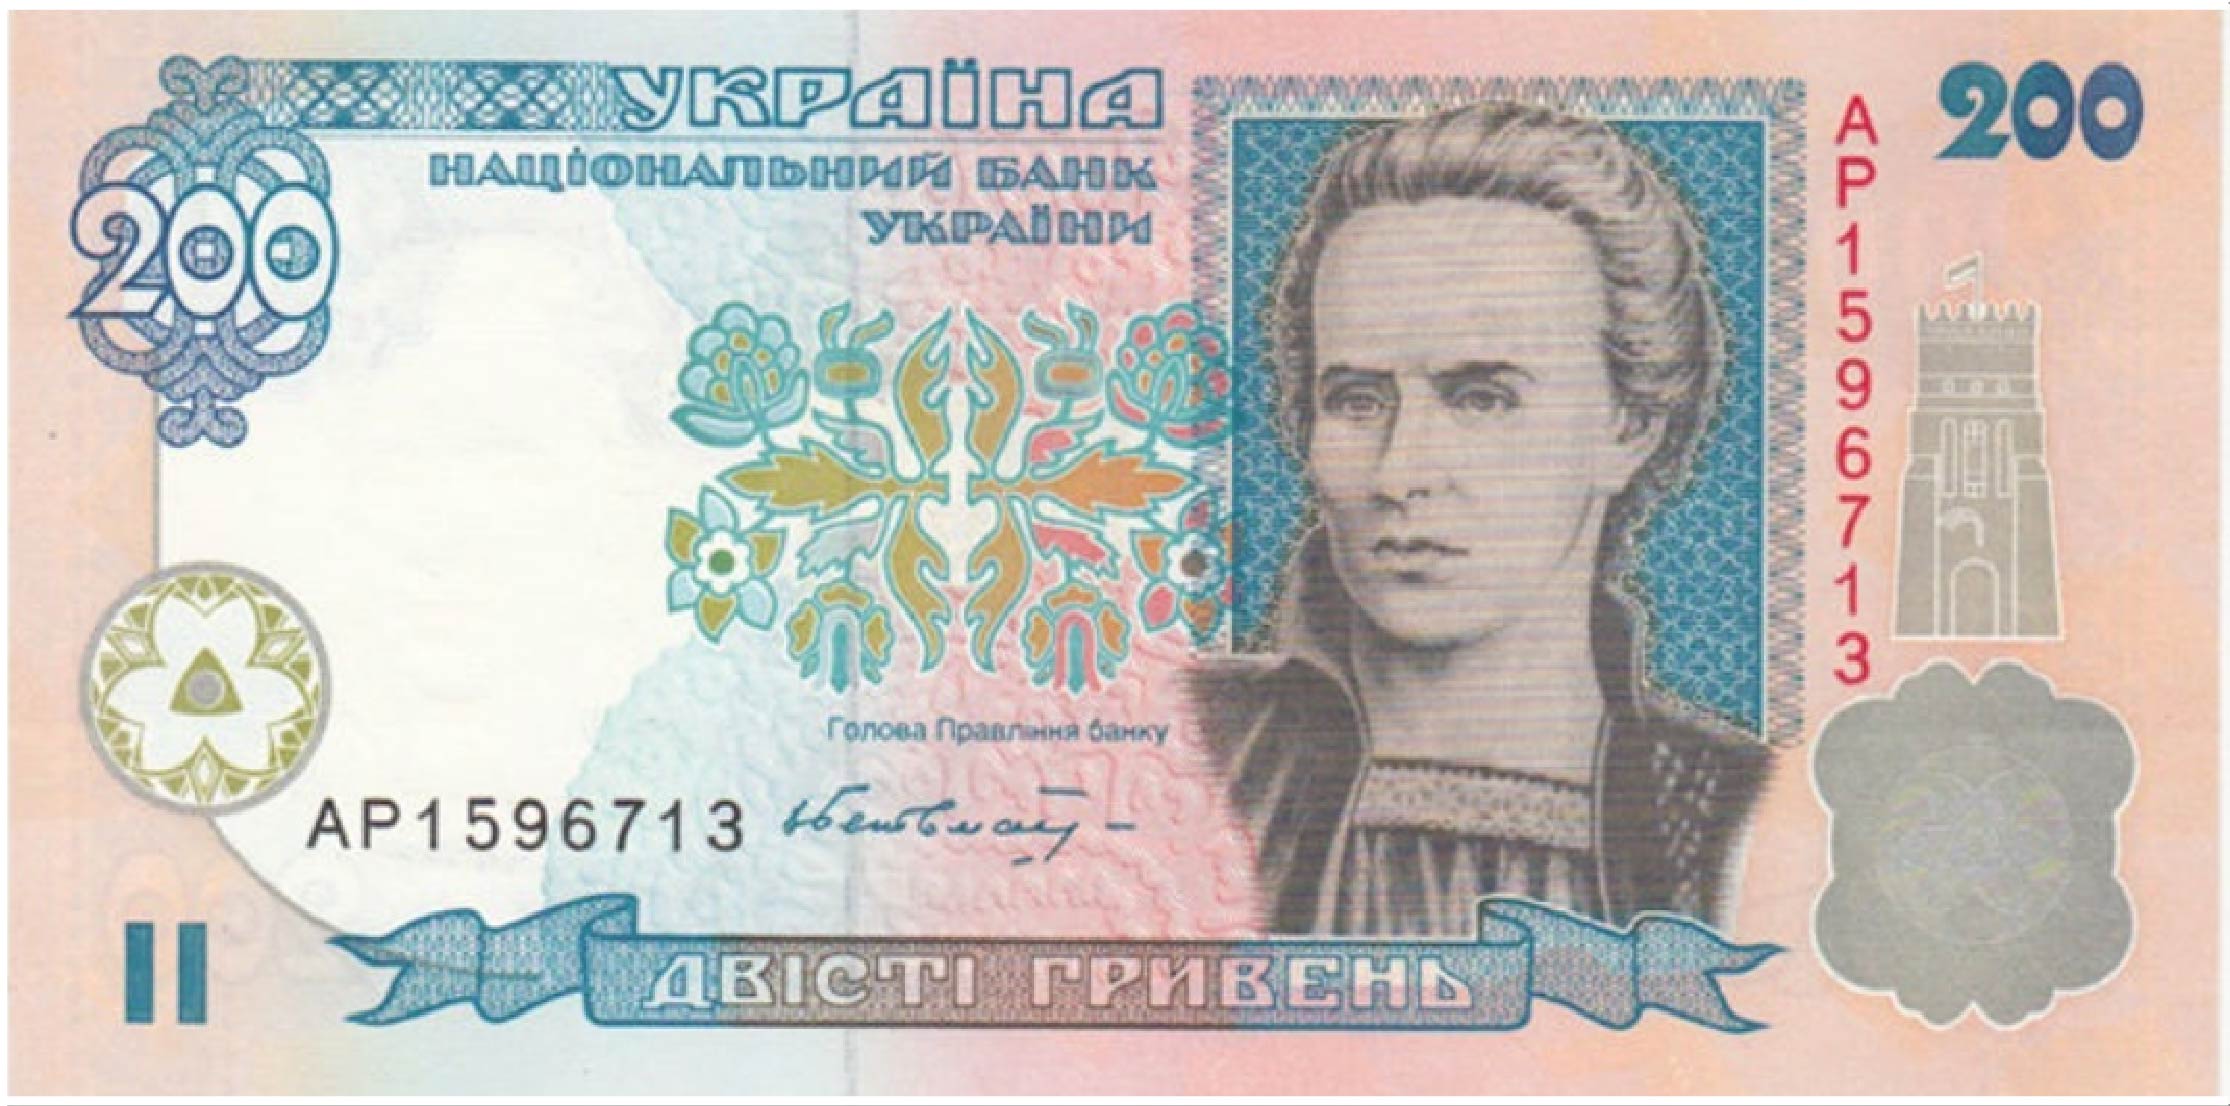 200 Ukrainian Hryvnias banknote (1994 to 2001 Series)